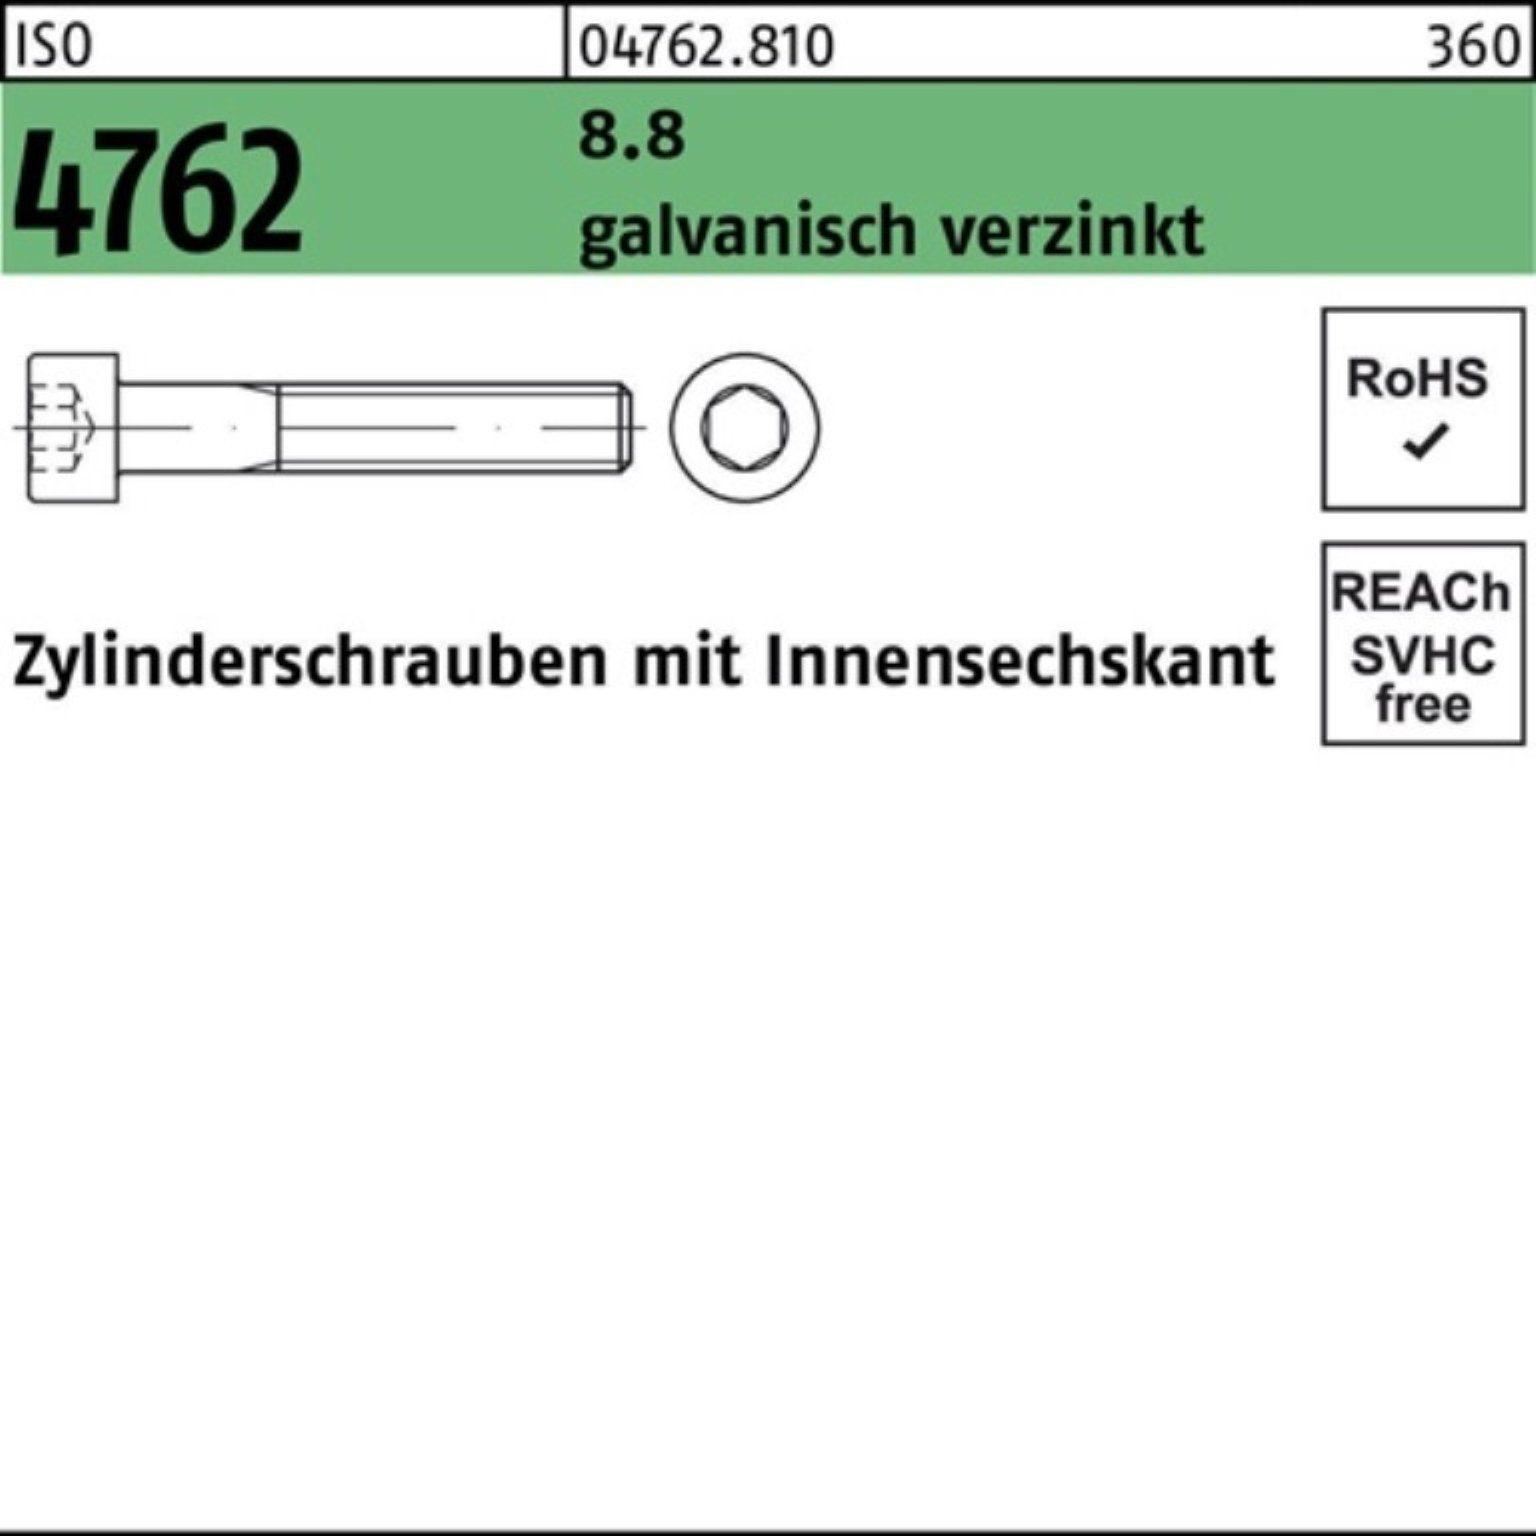 Zylinderschraube 4762 galv.verz. ISO Zylinderschraube Innen-6kt 100er Reyher 8.8 Pack M12x300